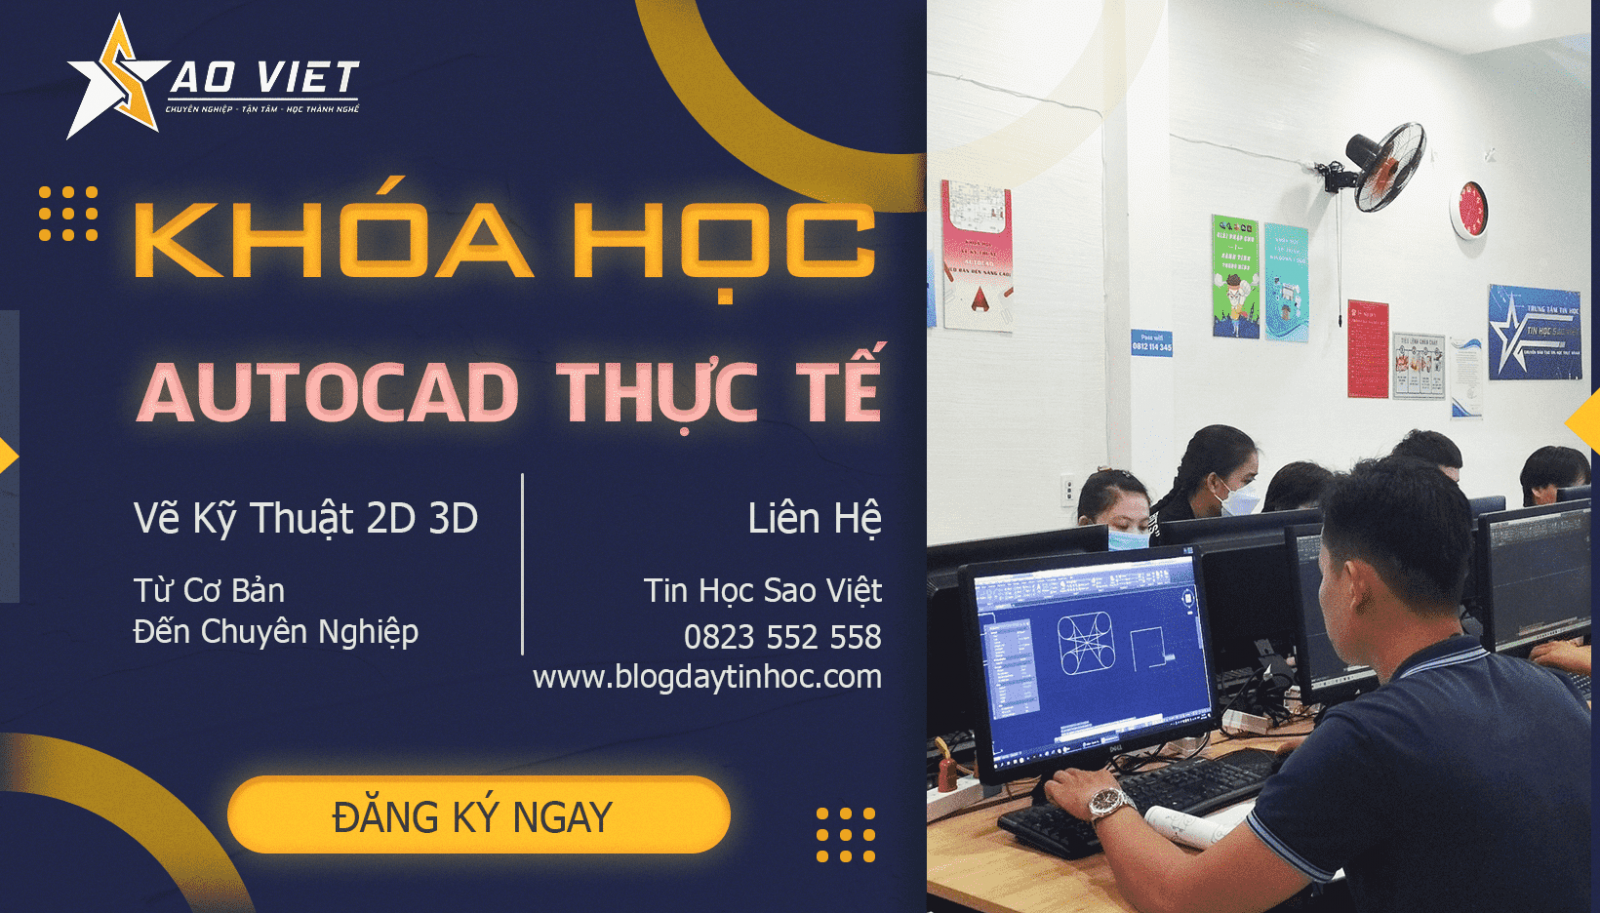 Khóa học AutoCAD ở Hà Đông Hà Nội là cơ hội tuyệt vời để bạn học các kỹ năng cần thiết để trở thành một kỹ sư thiết kế chuyên nghiệp. Với các giảng viên có kinh nghiệm và phương pháp giảng dạy đa dạng, bạn sẽ có được sự tự tin để thiết kế những tác phẩm đáng ngưỡng mộ. Nhấn vào hình ảnh để tìm hiểu thêm.